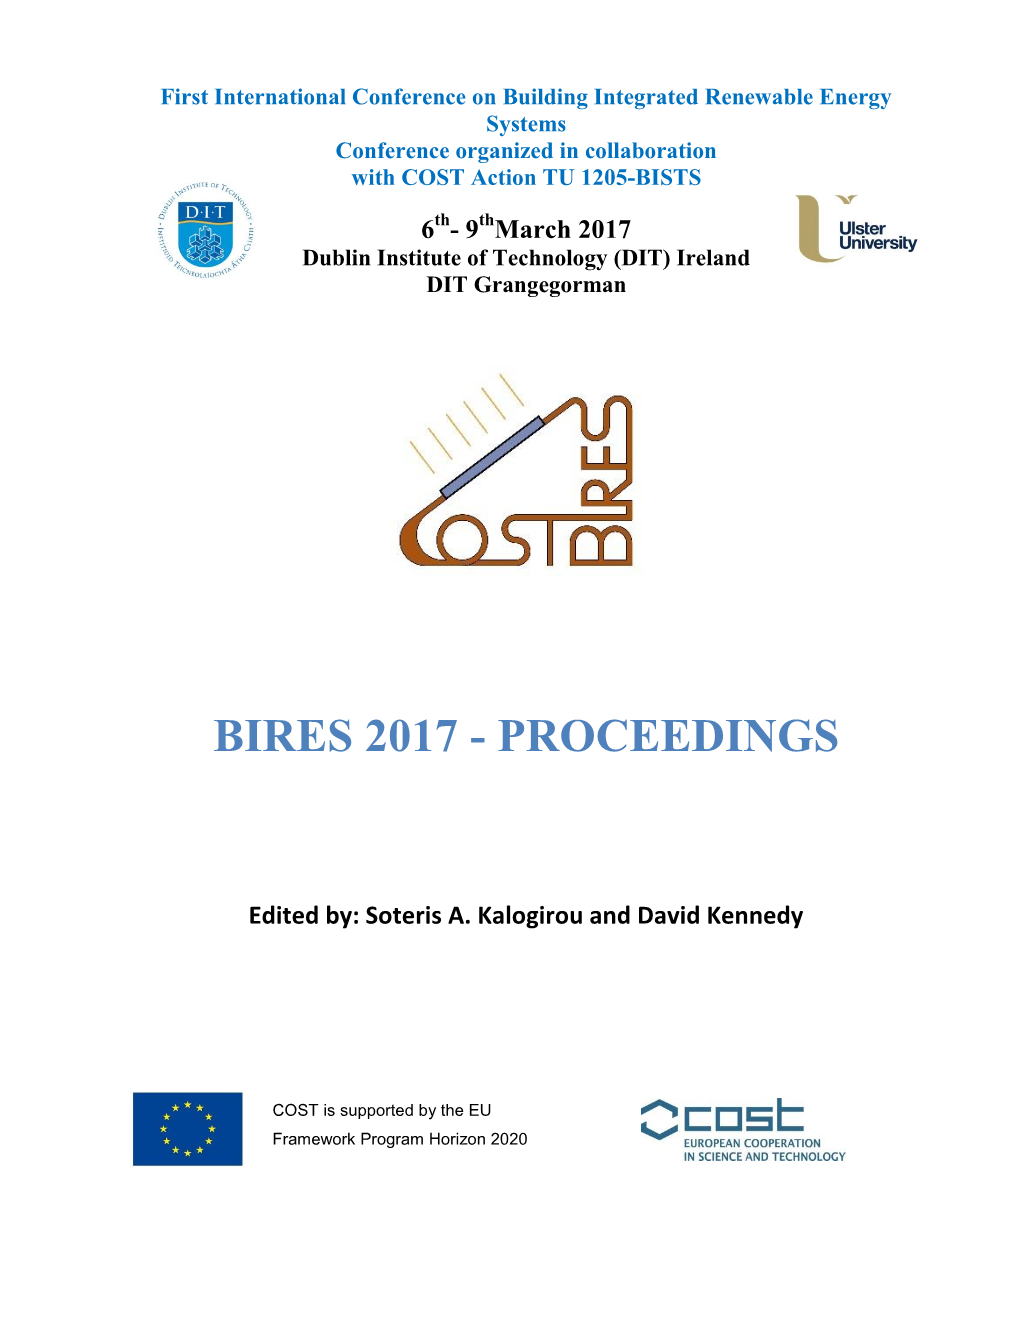 Bires 2017 - Proceedings